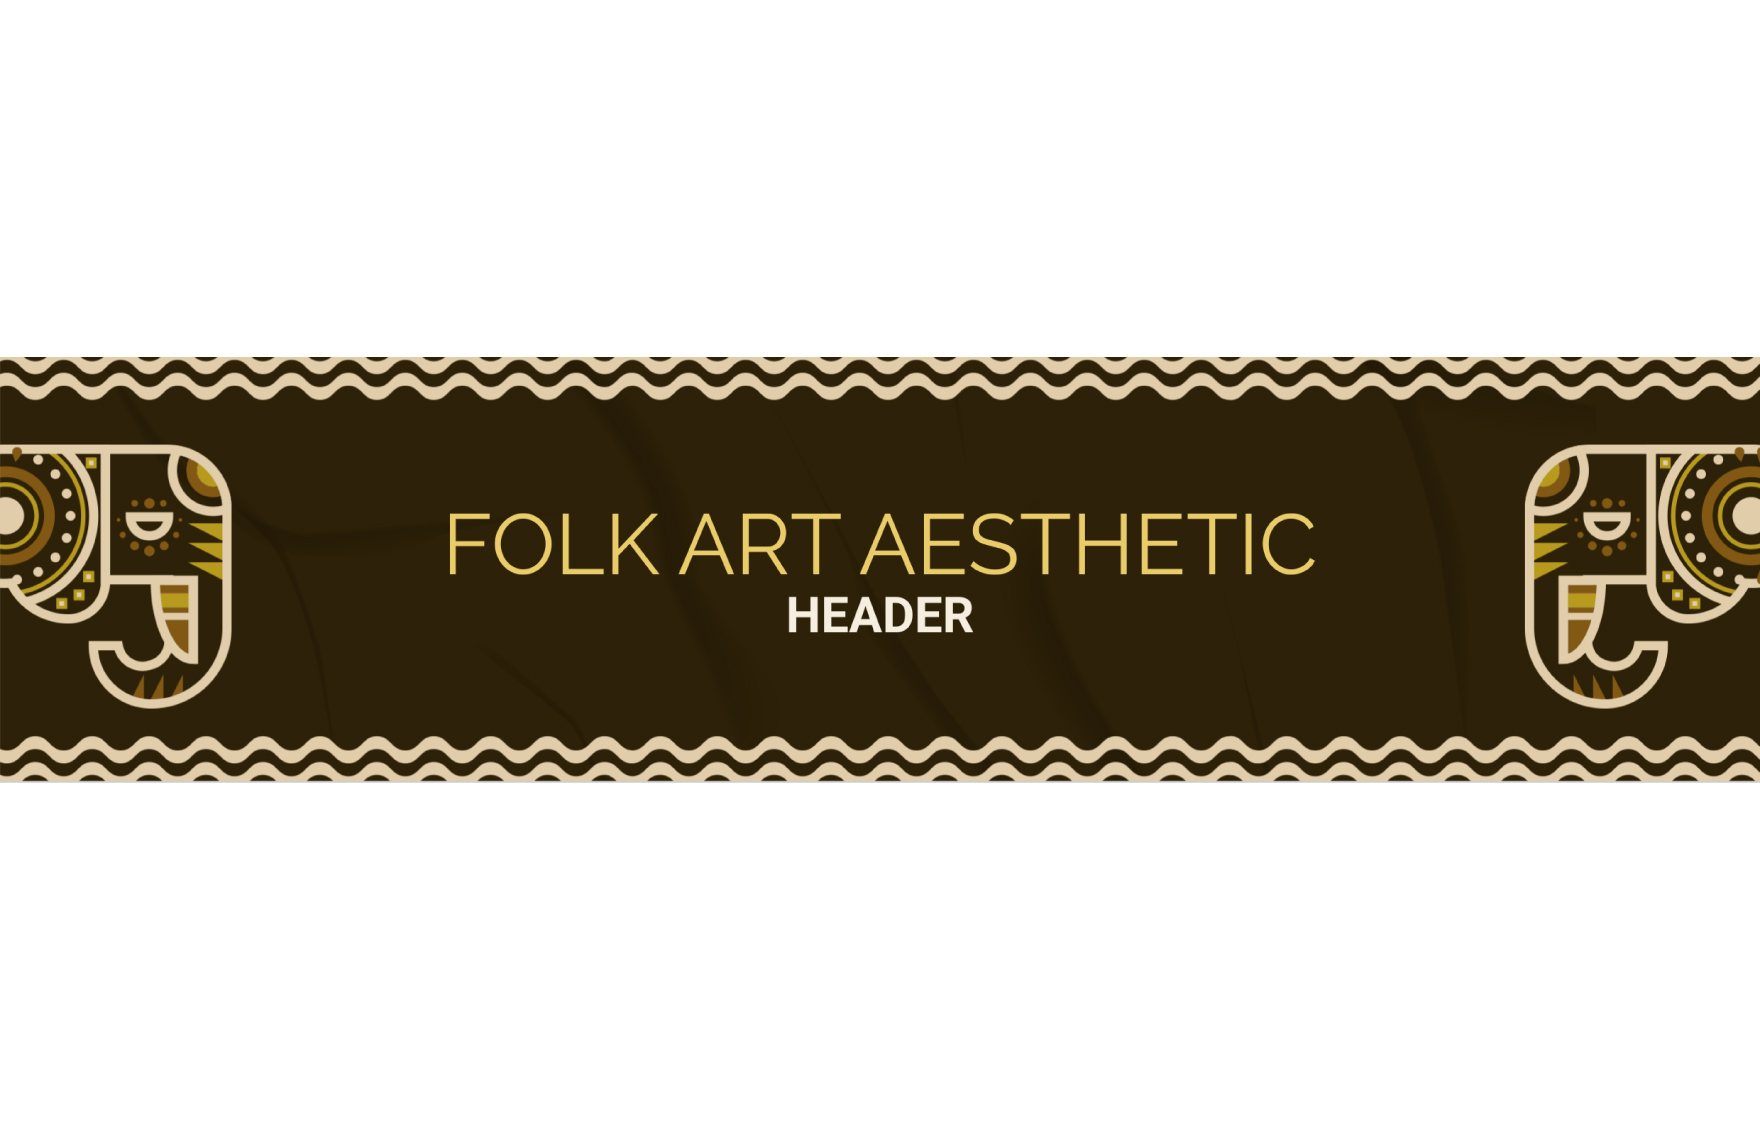 Folk Art Aesthetic Header